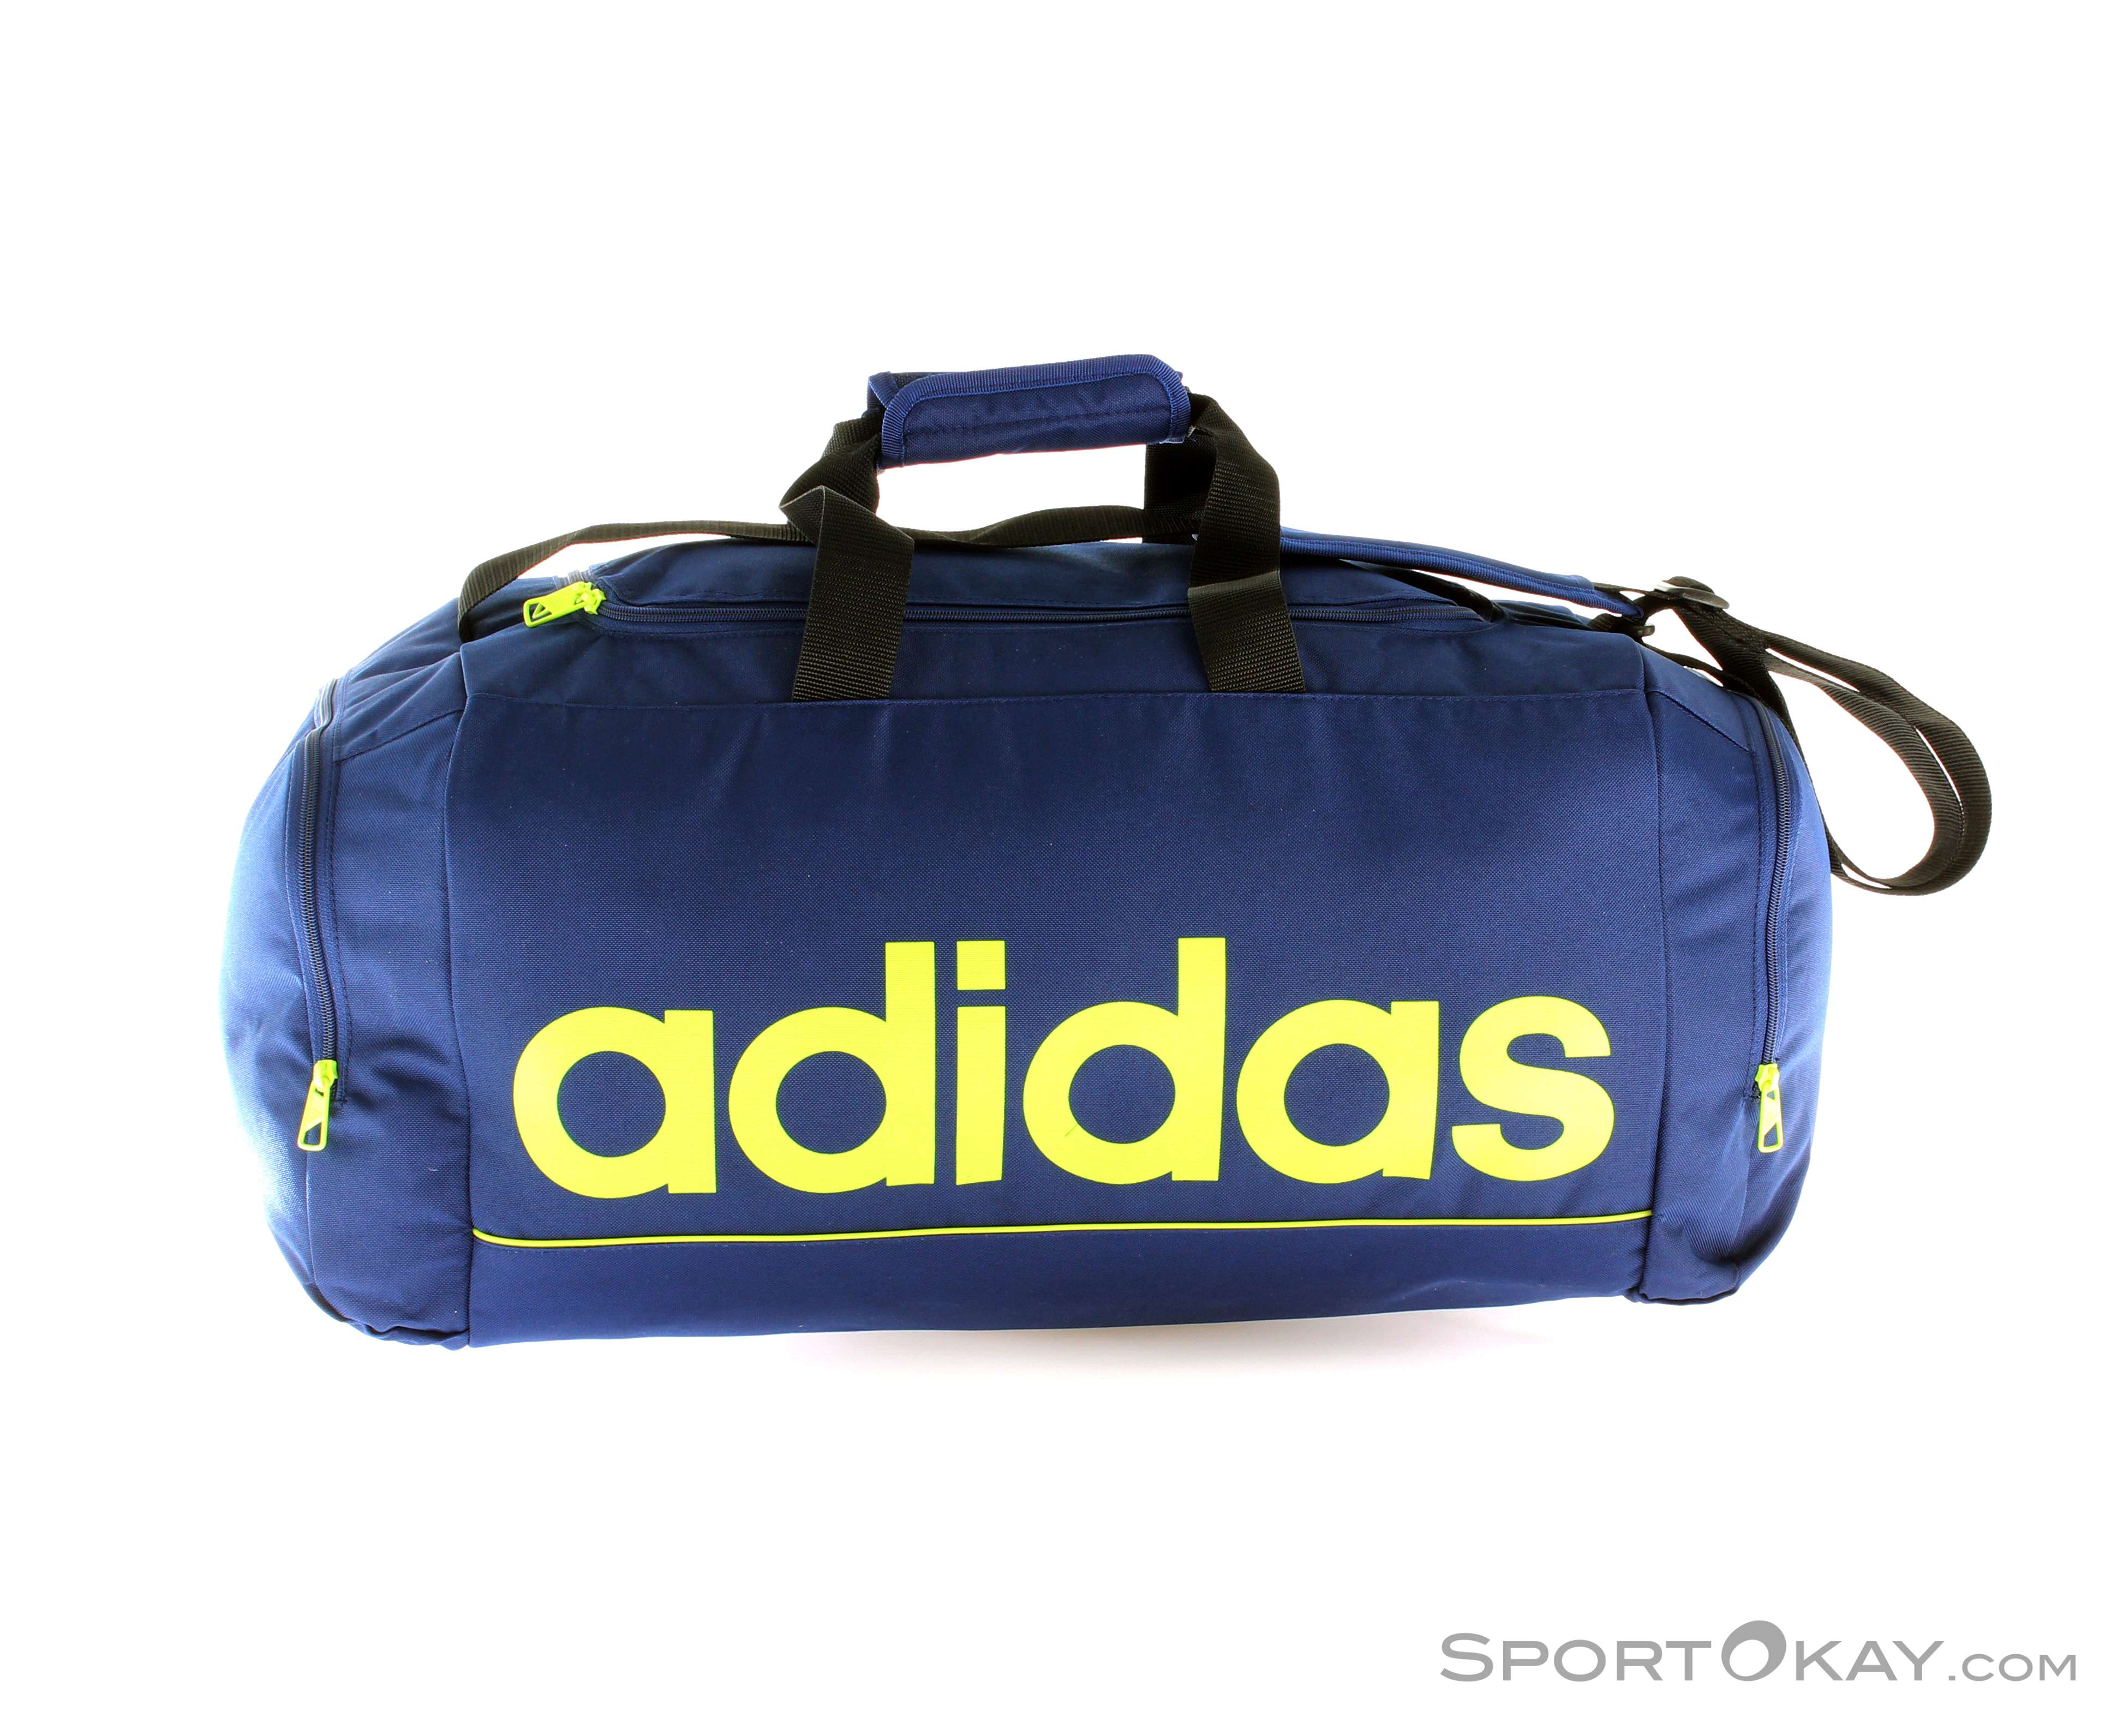 Linear Essentials Teambag Sporttasche - Bags - Leisure Bags Fashion - All